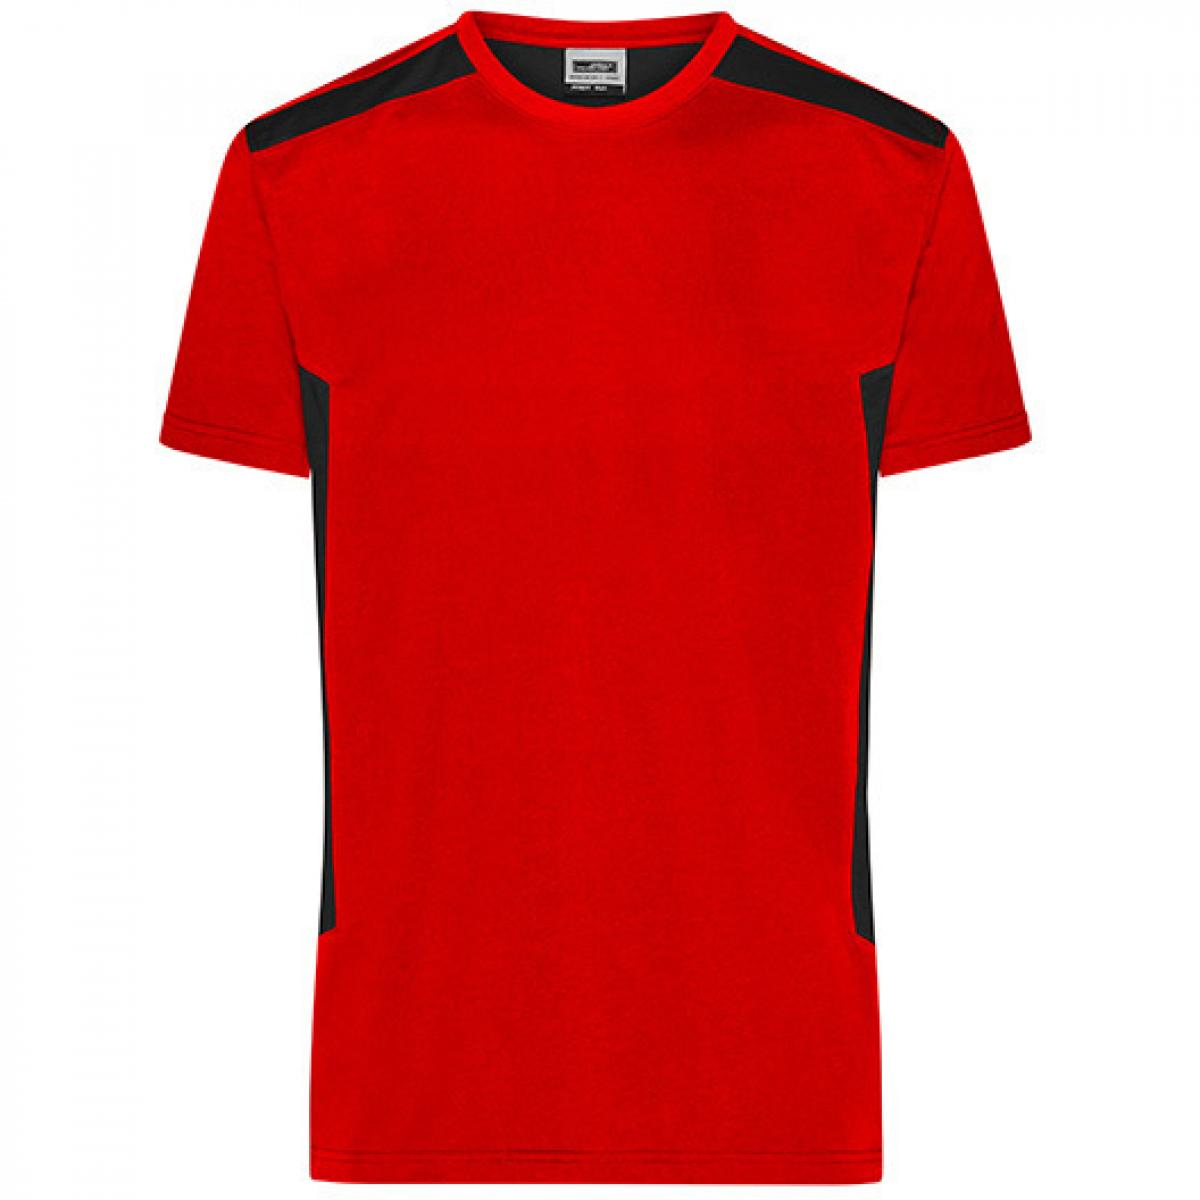 Hersteller: James+Nicholson Herstellernummer: JN1824 Artikelbezeichnung: Herren T, Men‘s Workwear T-Shirt -STRONG-Waschbar bis 60 °C Farbe: Red/Black